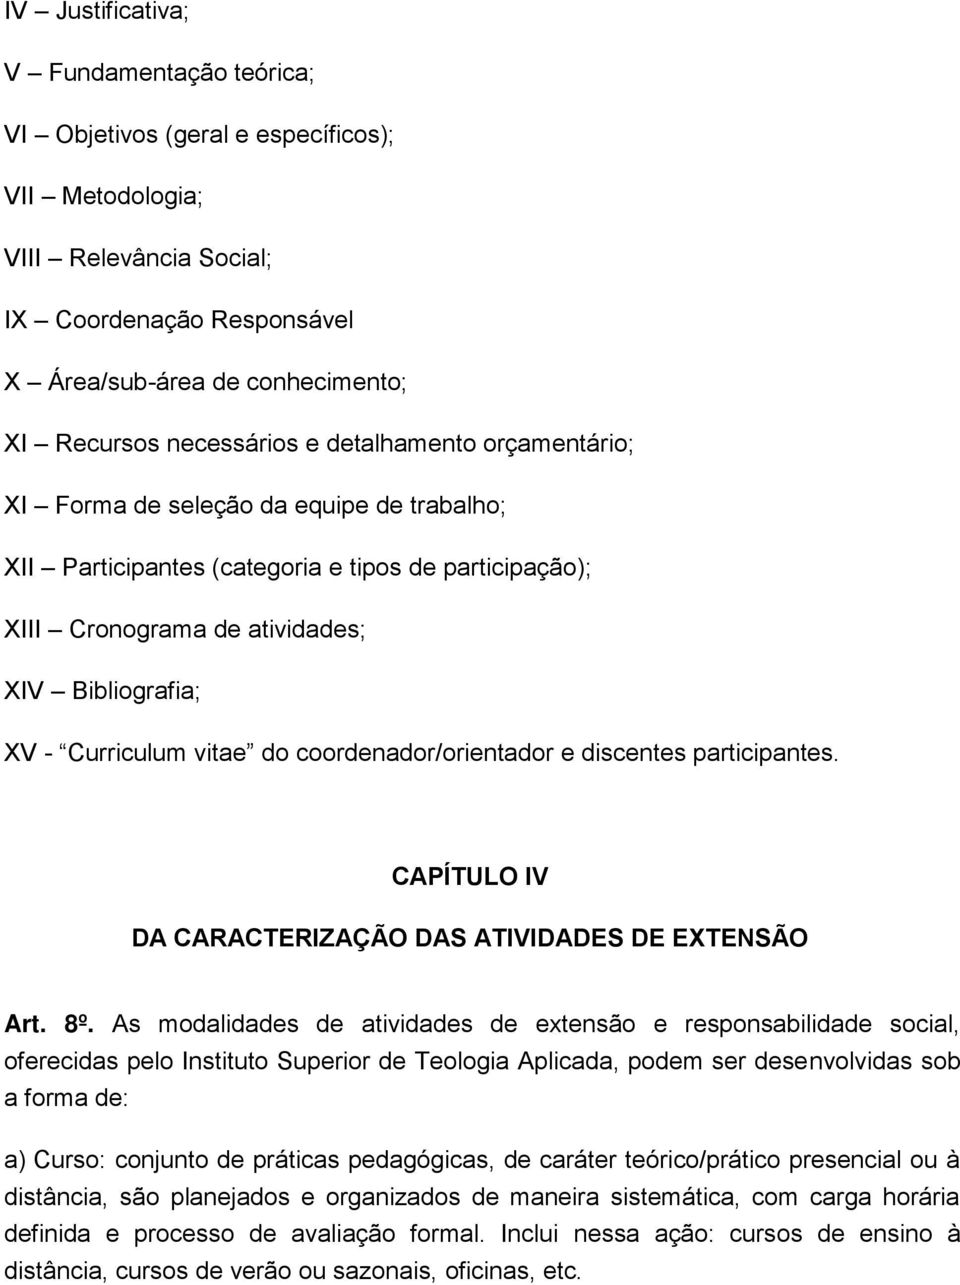 Curriculum vitae do coordenador/orientador e discentes participantes. CAPÍTULO IV DA CARACTERIZAÇÃO DAS ATIVIDADES DE EXTENSÃO Art. 8º.